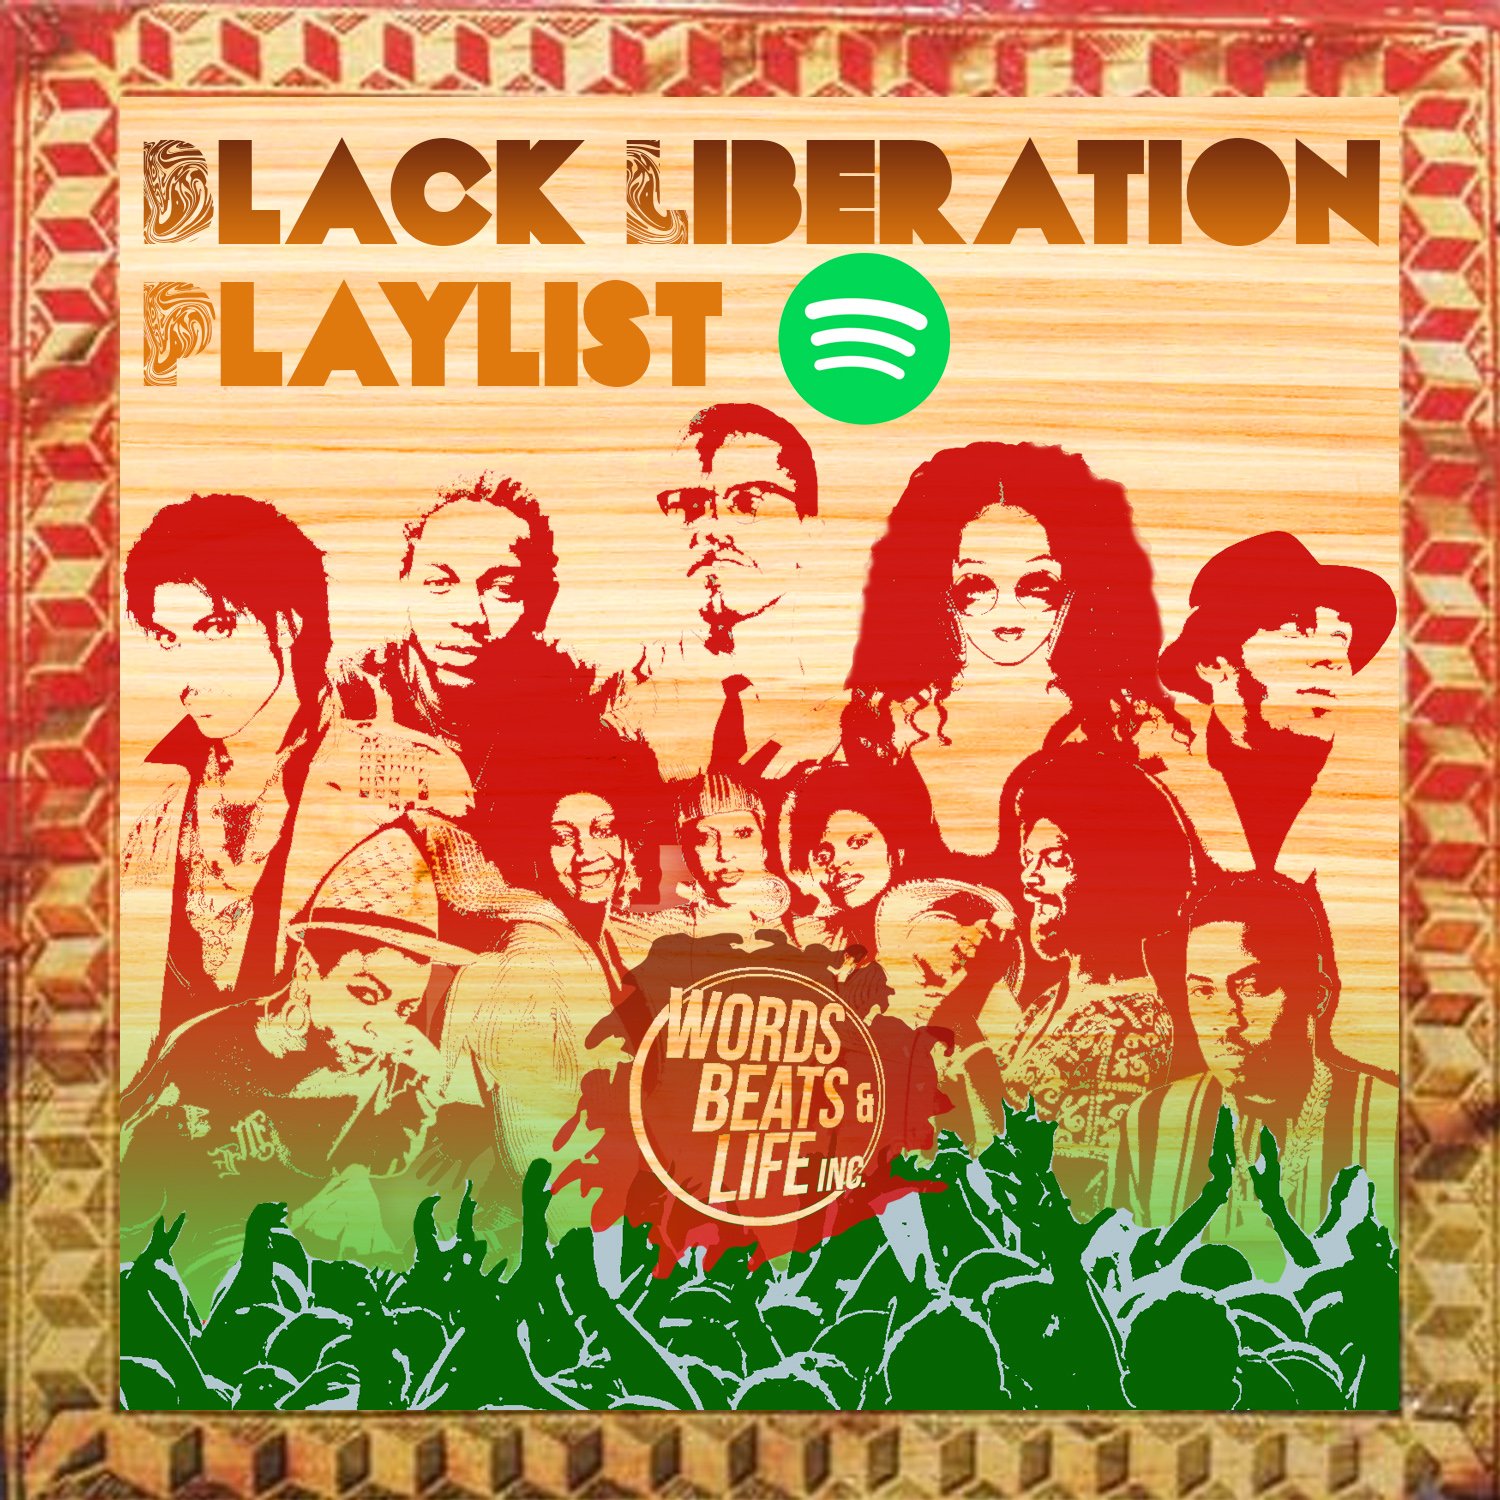 WBL_Black Liberation Playlist_Spotify.jpg